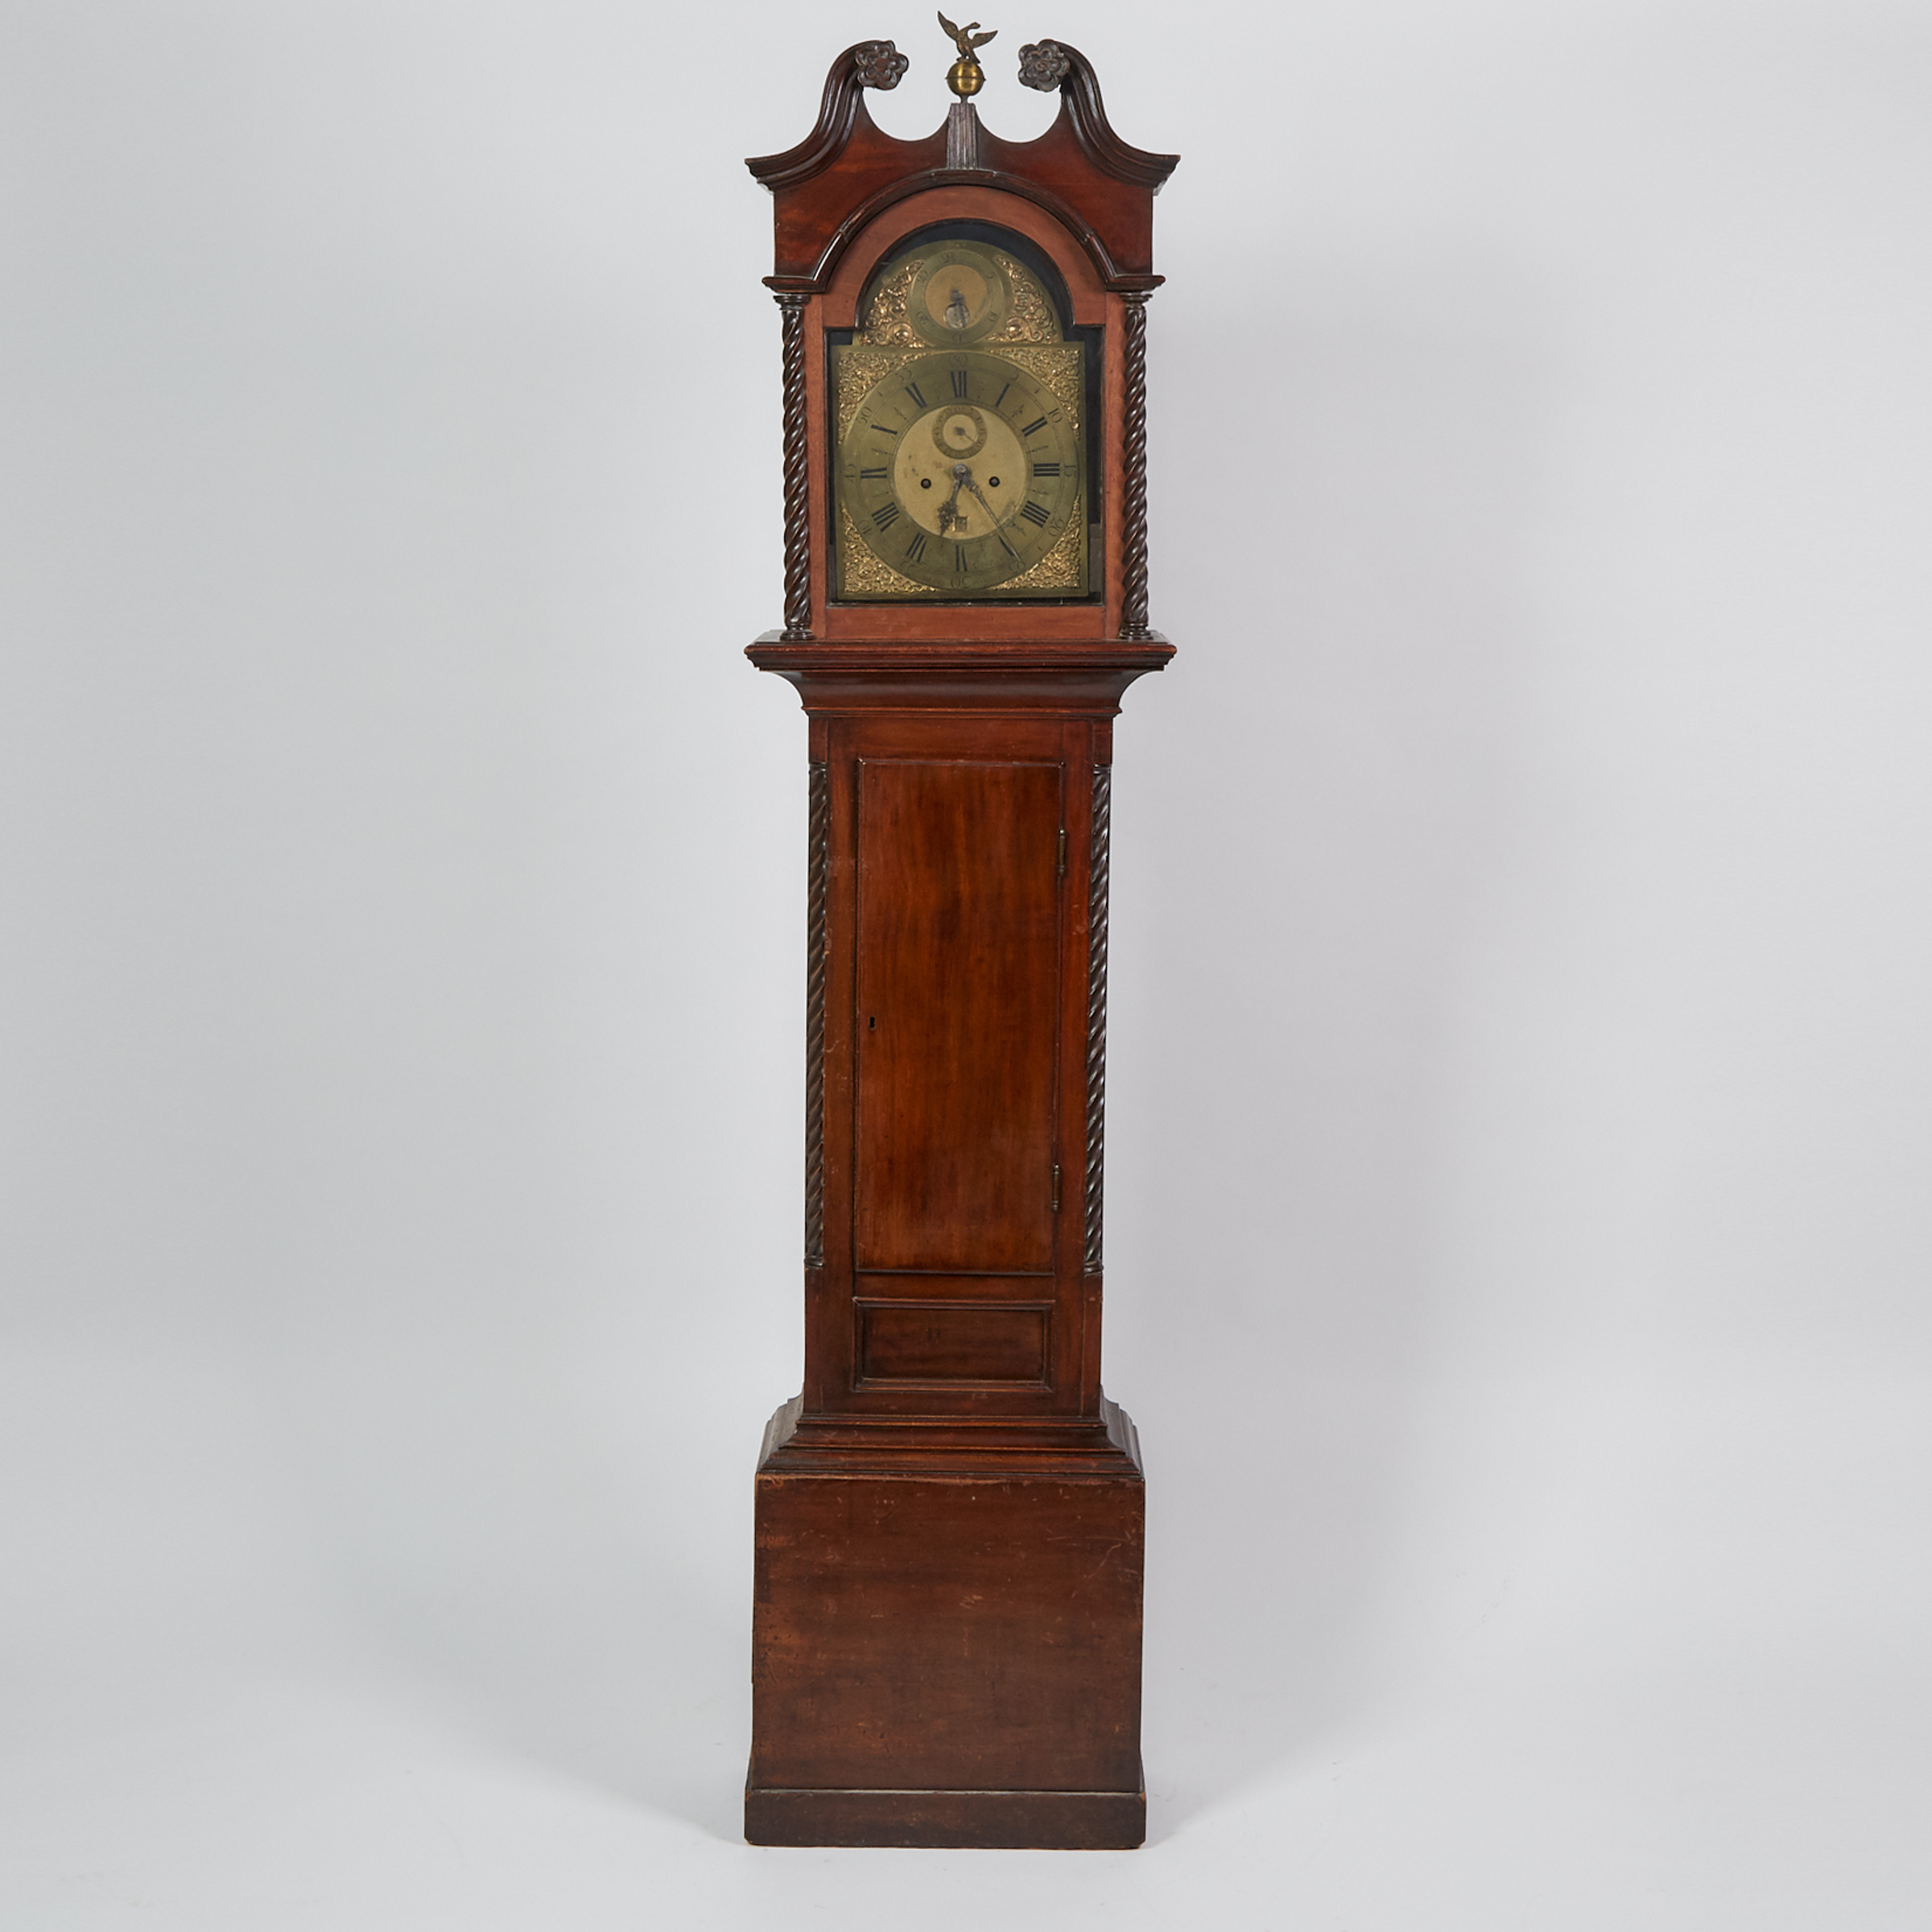 Georgian Mahogany Tall Case Clock, Edward Cockey, Warminster, 18th century and later